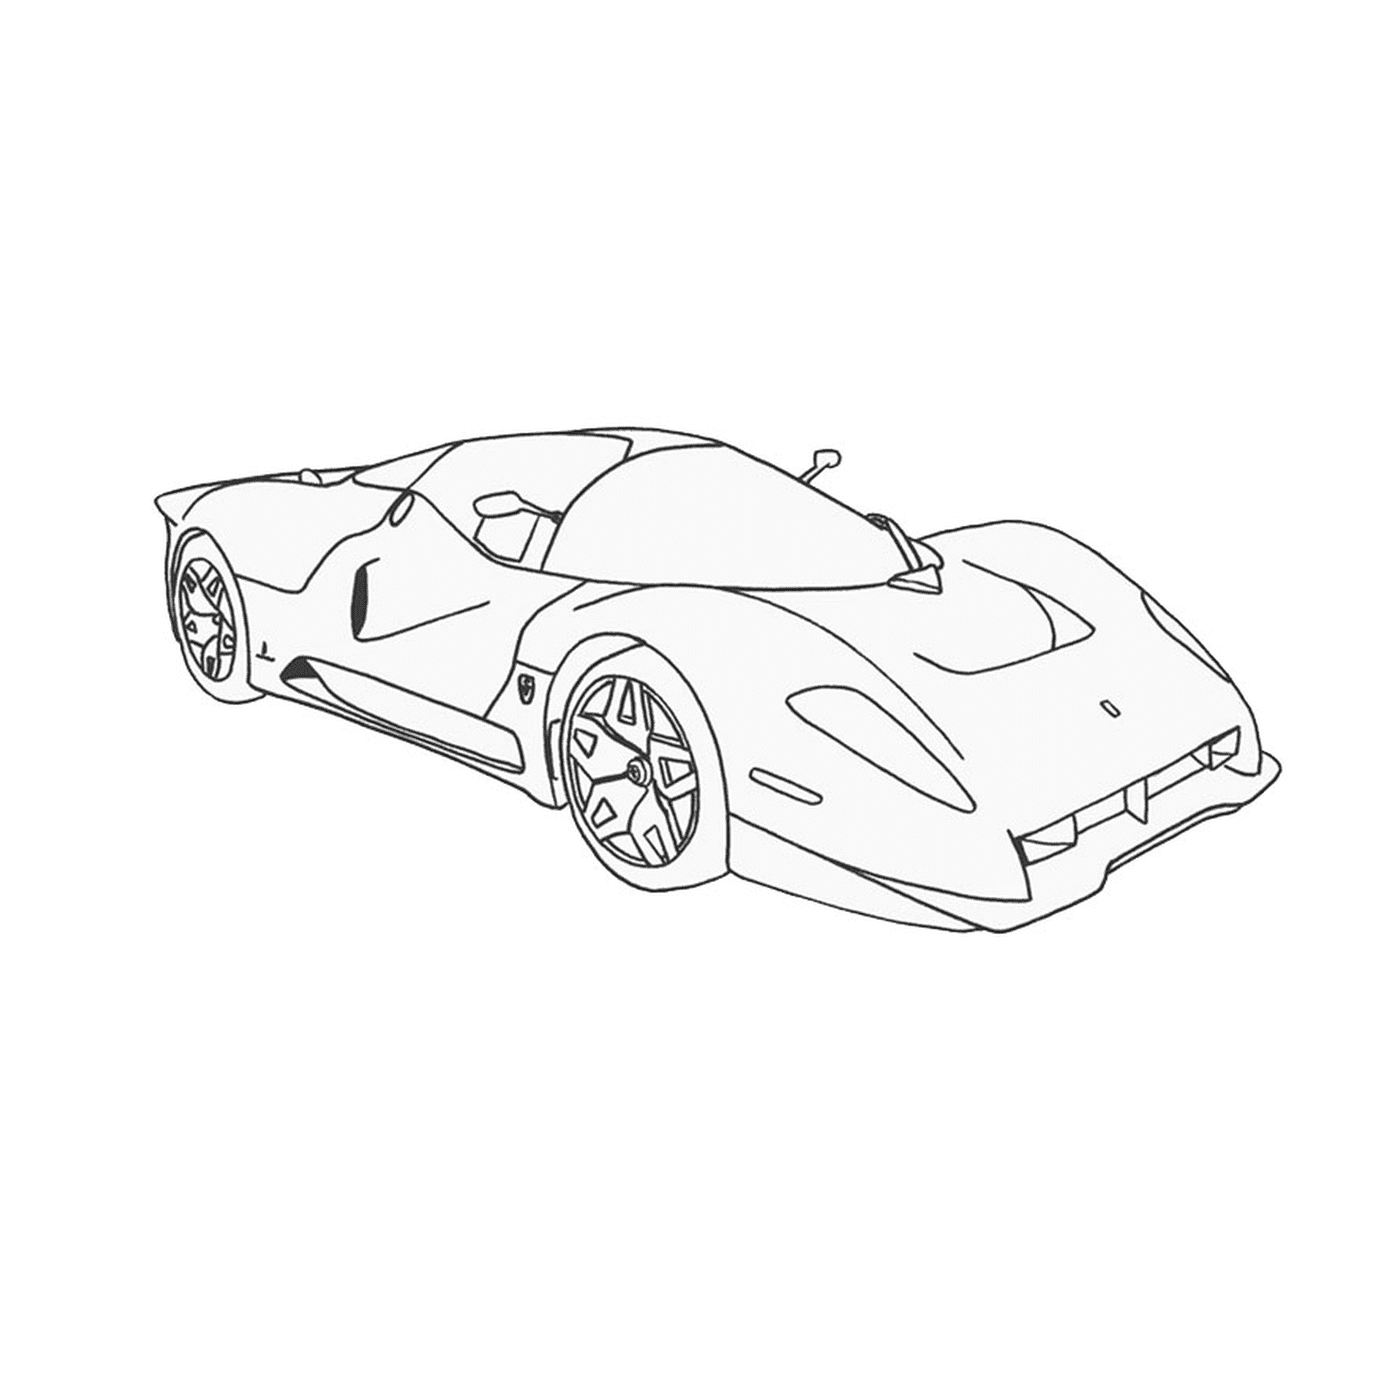  Dibujo de un coche 